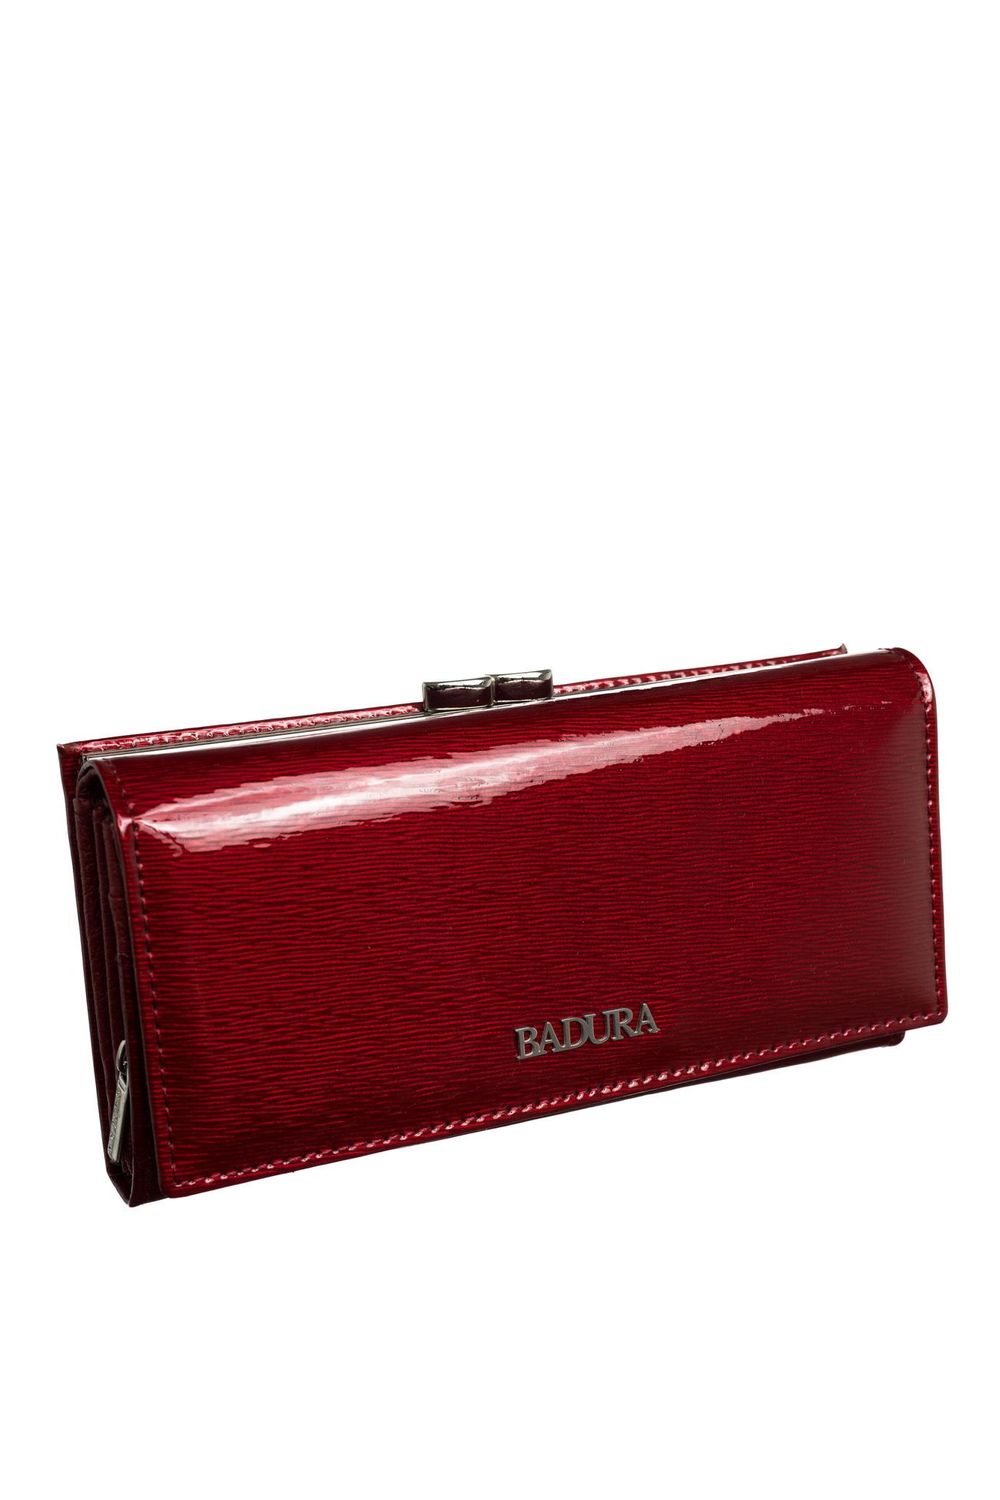 Women`s wallet model 160897 Ba..